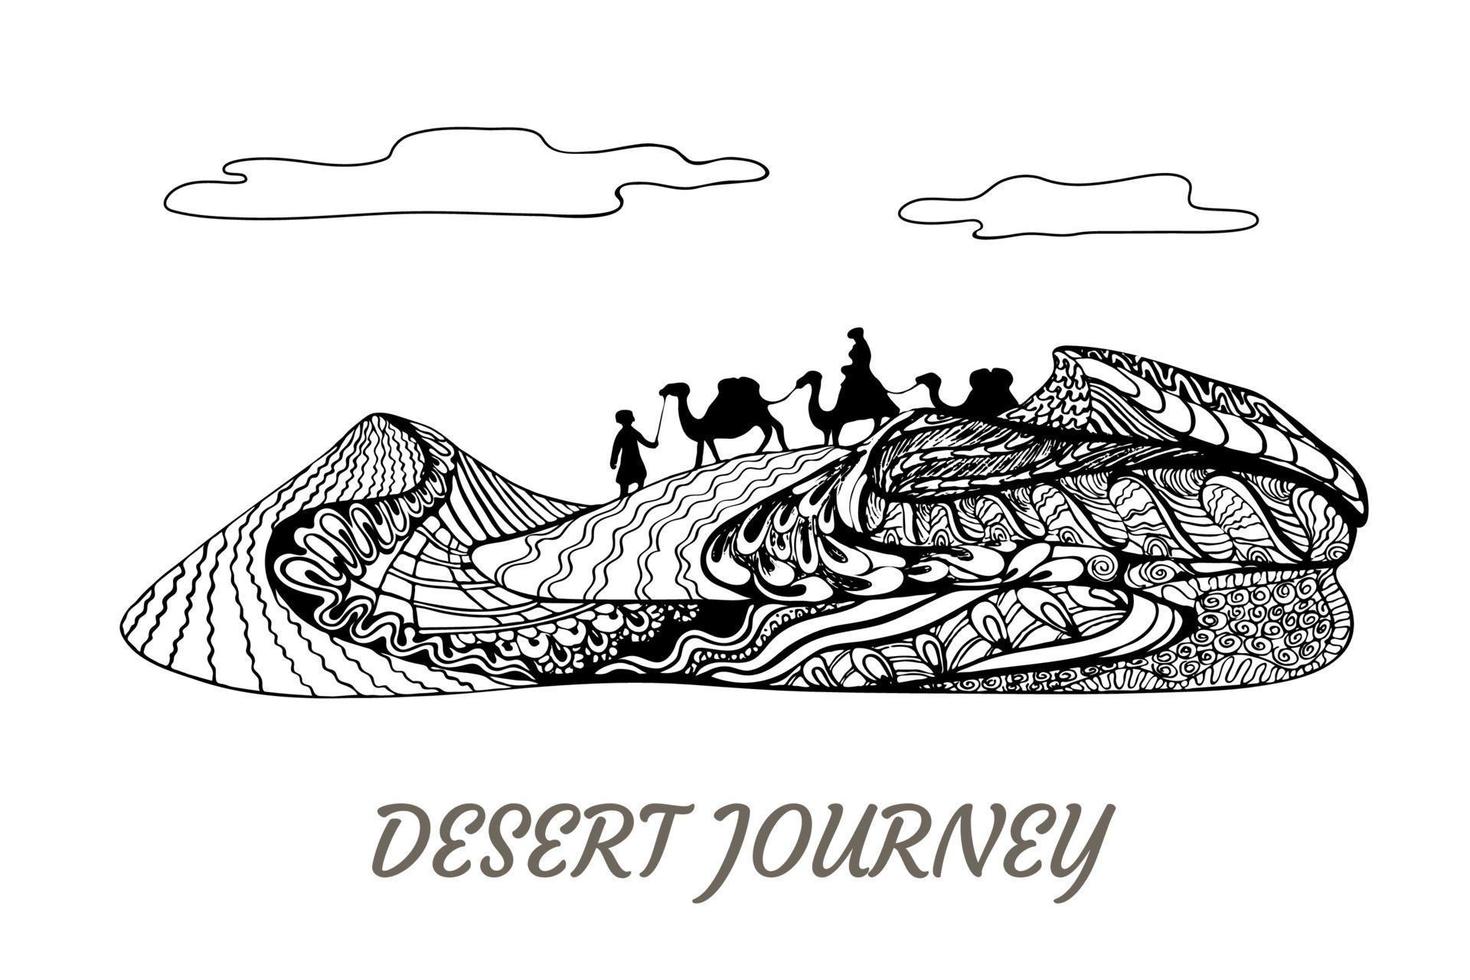 viaje por el desierto, camellos y camelleros caminando sobre el paisaje de dunas de arena. Arte conceptual de zentangle elegante y ornamentado, diseño horizontal en blanco y negro para impresiones vector